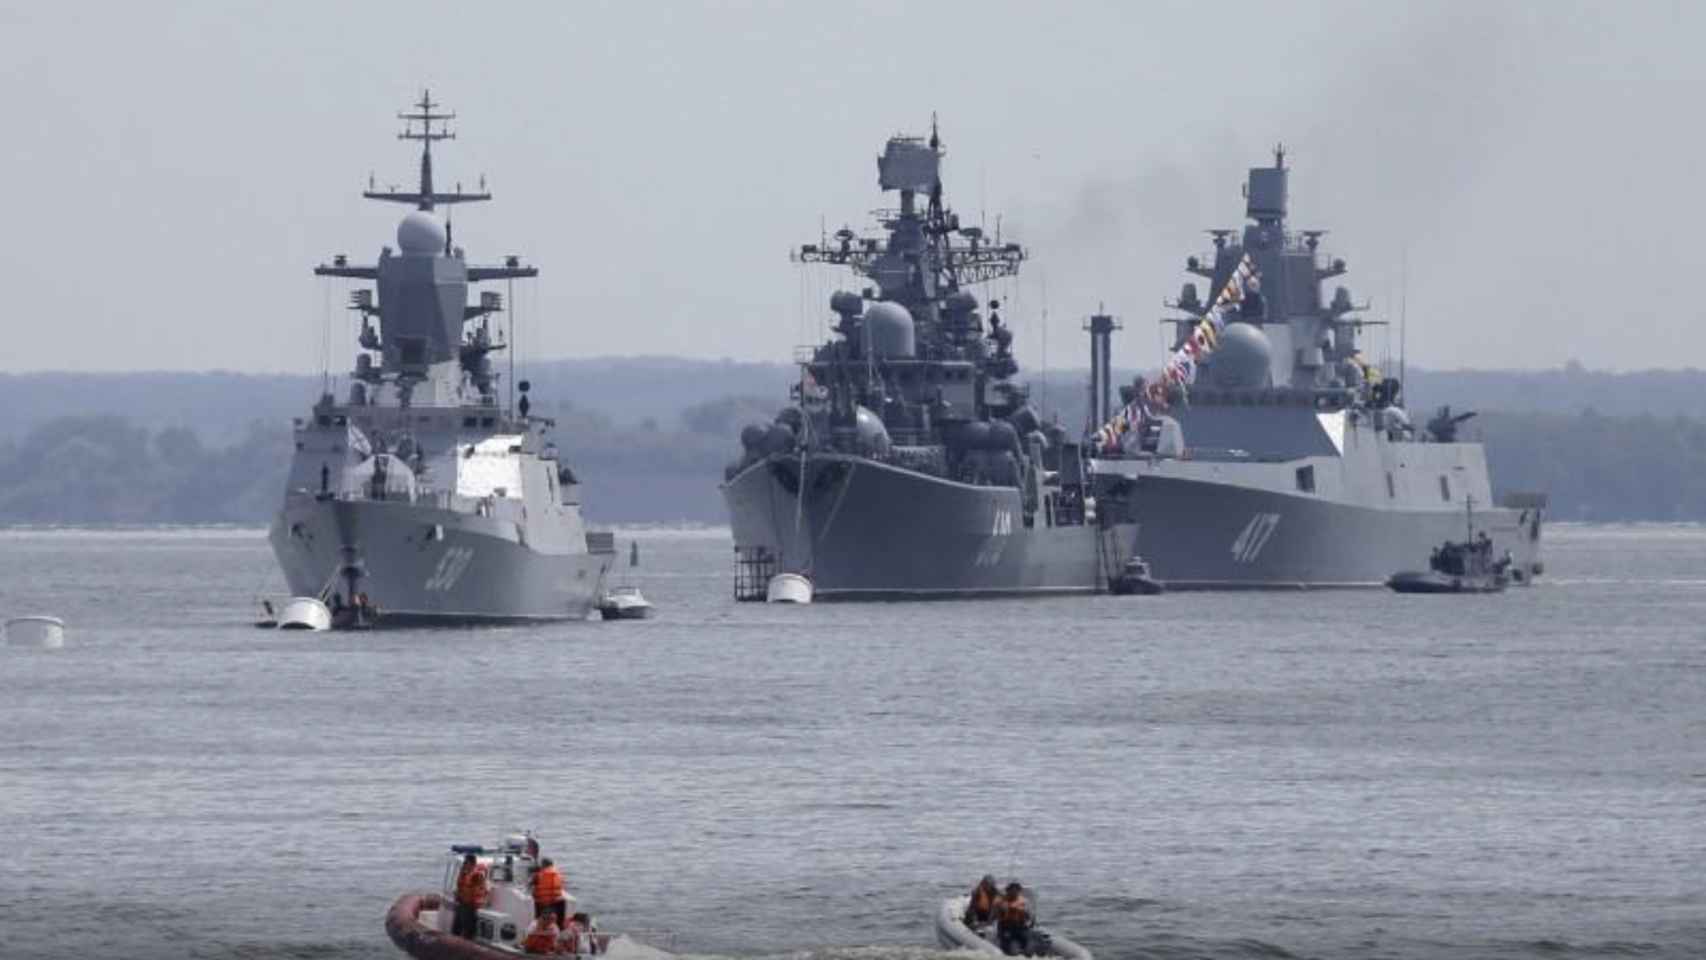 a corbeta de la marina rusa Steregushchy, el destructor Nastoichivy y la fragata Almirante Gorshkov están anclados en una bahía de la base de la flota rusa en Baltiysk en la región de Kaliningrado, Rusia, el 19 de julio de 2015.